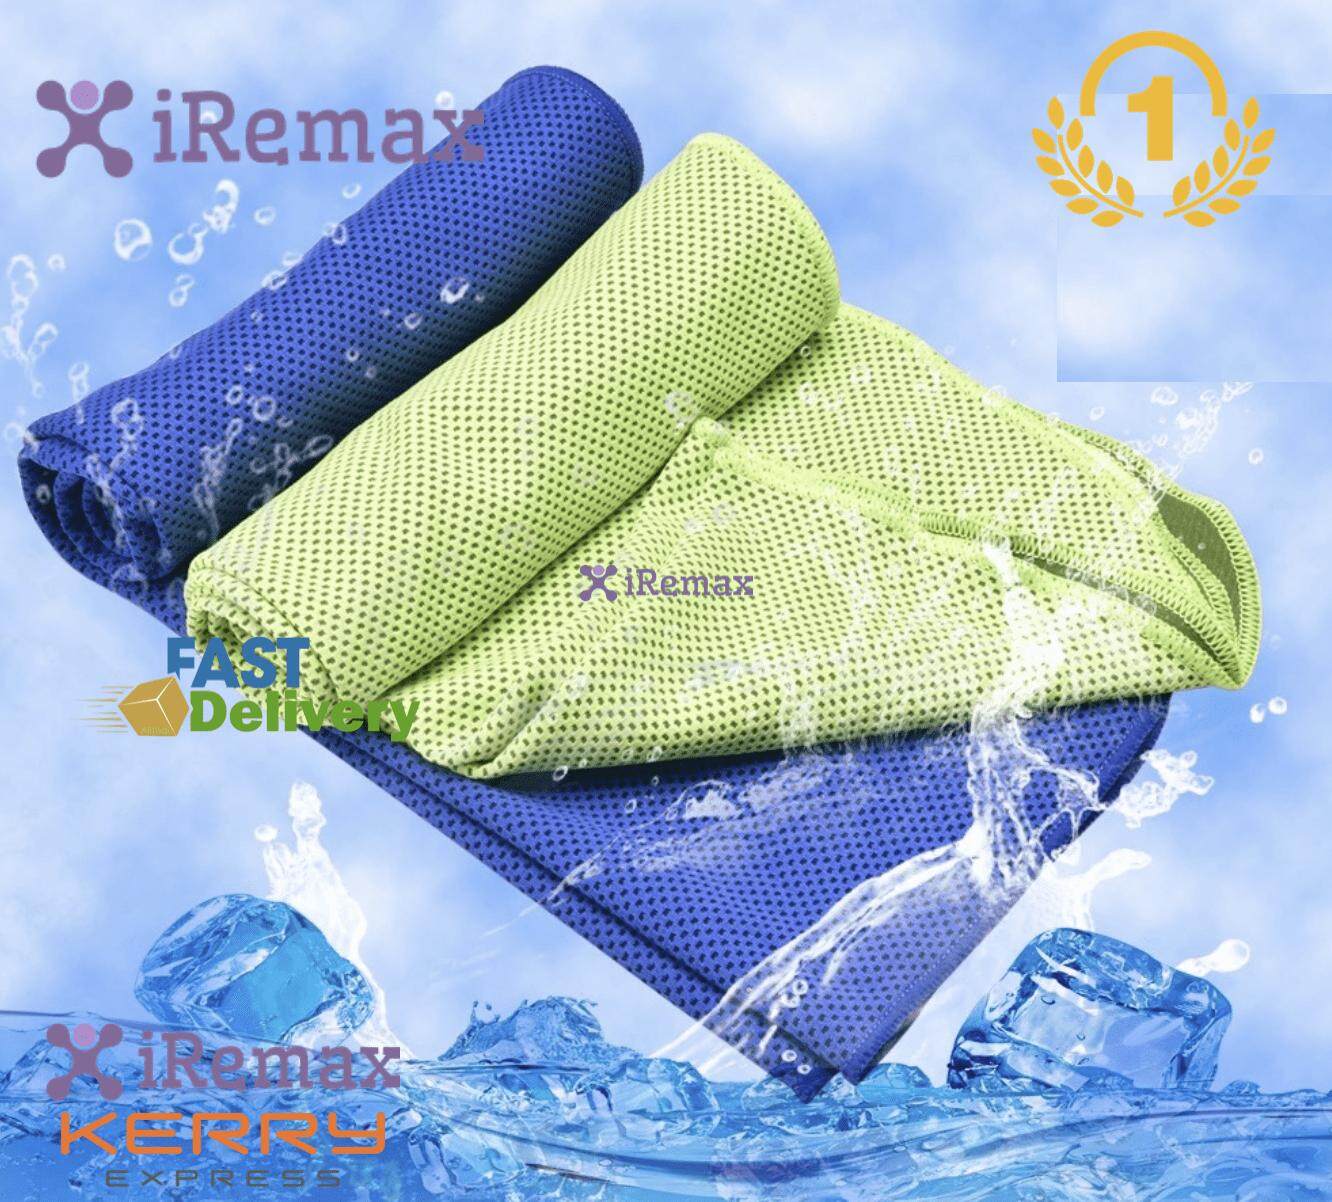 iRemax ผ้าเย็นซับเหงื่อ สำหรับนักกีฬา เก็บความเย็นได้ดีเยี่ยม ขนาด 30x90 ซม.พกพาสะดวก